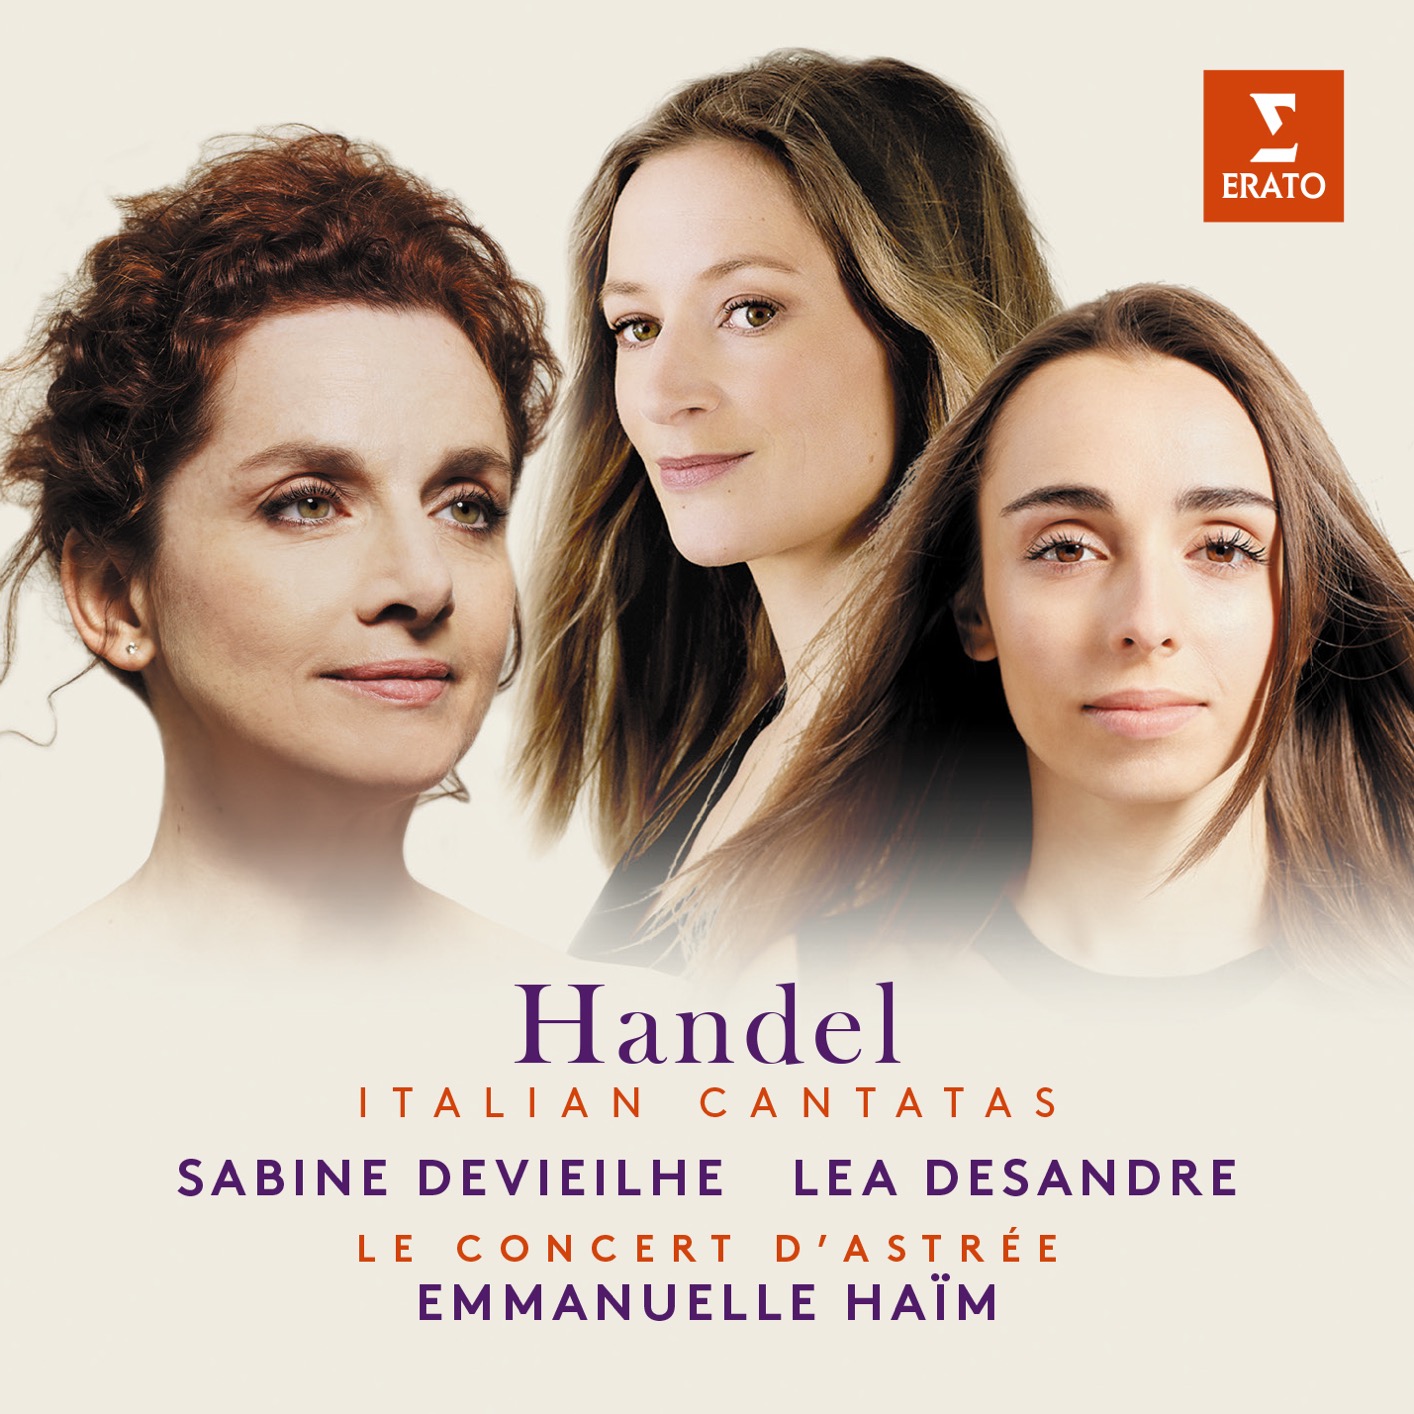 Sabine Devieilhe, Lea Desandre, Le Concert d’Astree & Emmanuelle Haim - Handel: Italian Cantatas (2018) [FLAC 24bit/96kHz]